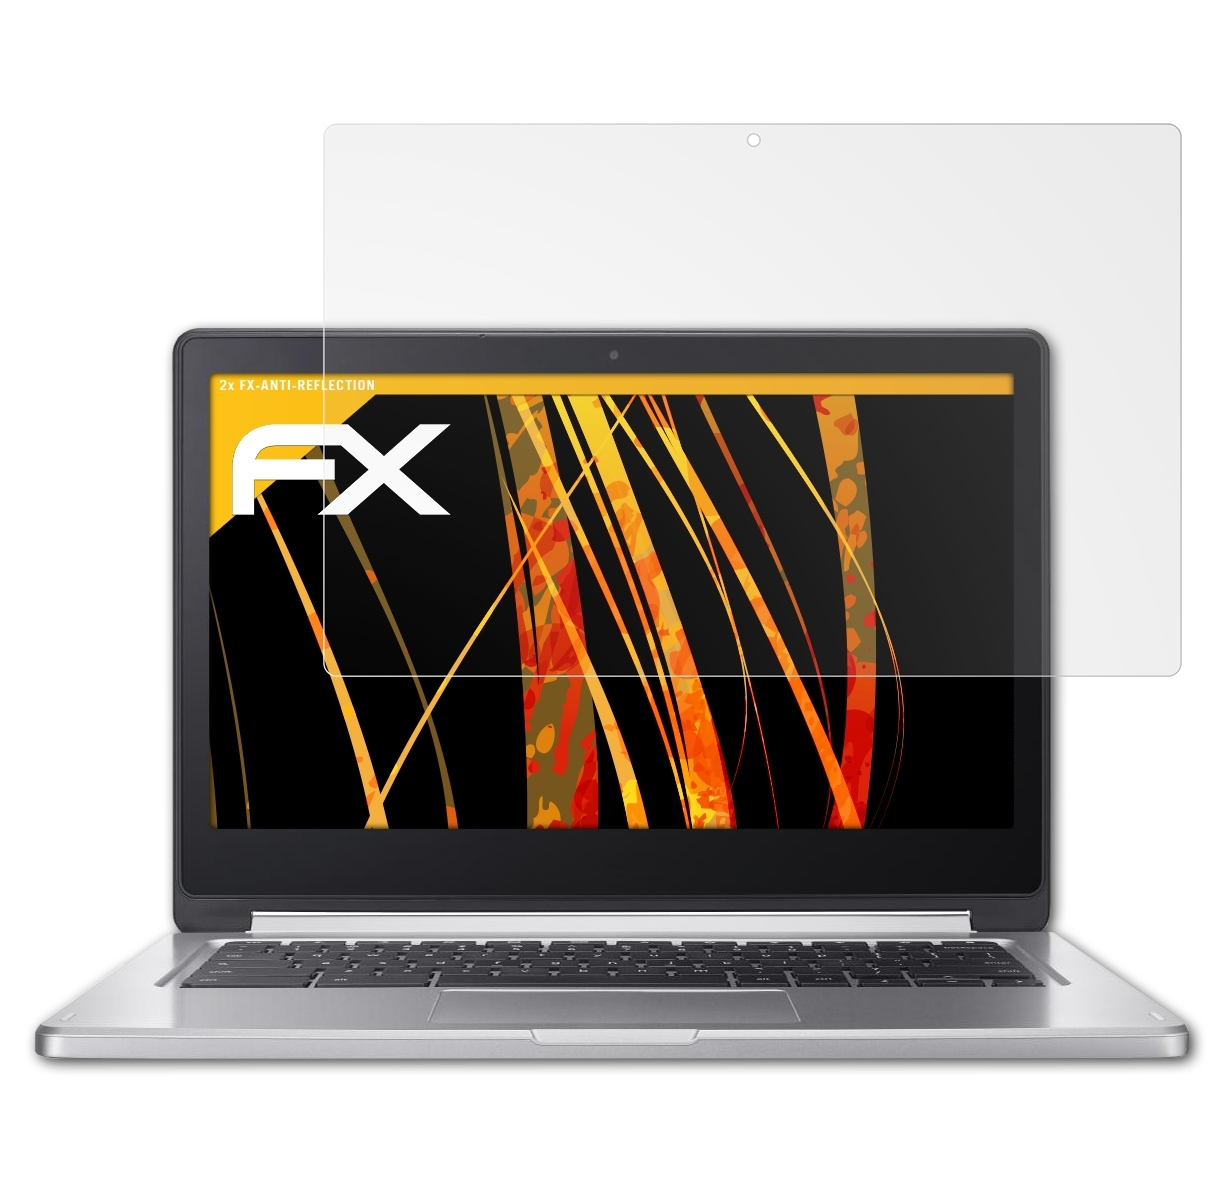 FX-Antireflex Google 2x Displayschutz(für R13 (Acer)) Chromebook ATFOLIX